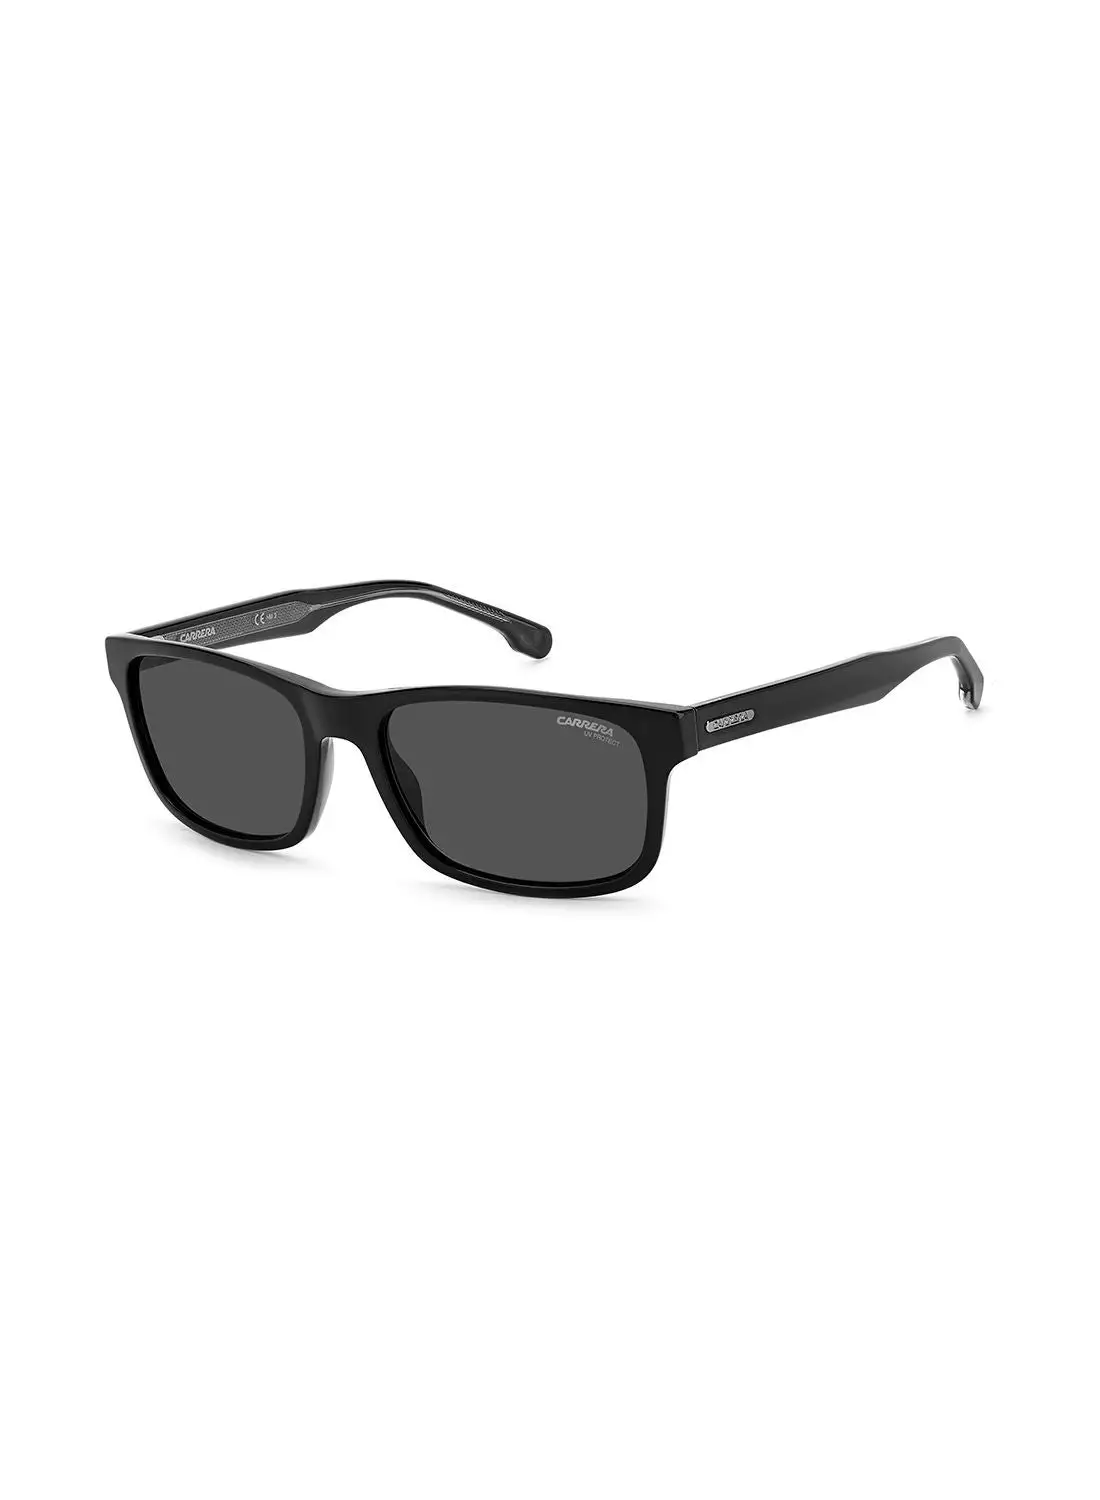 نظارة كاريرا الشمسية مستطيلة الشكل للحماية من الأشعة فوق البنفسجية للرجال - Carrera 299/S Black 57 - مقاس العدسة: 57 ملم